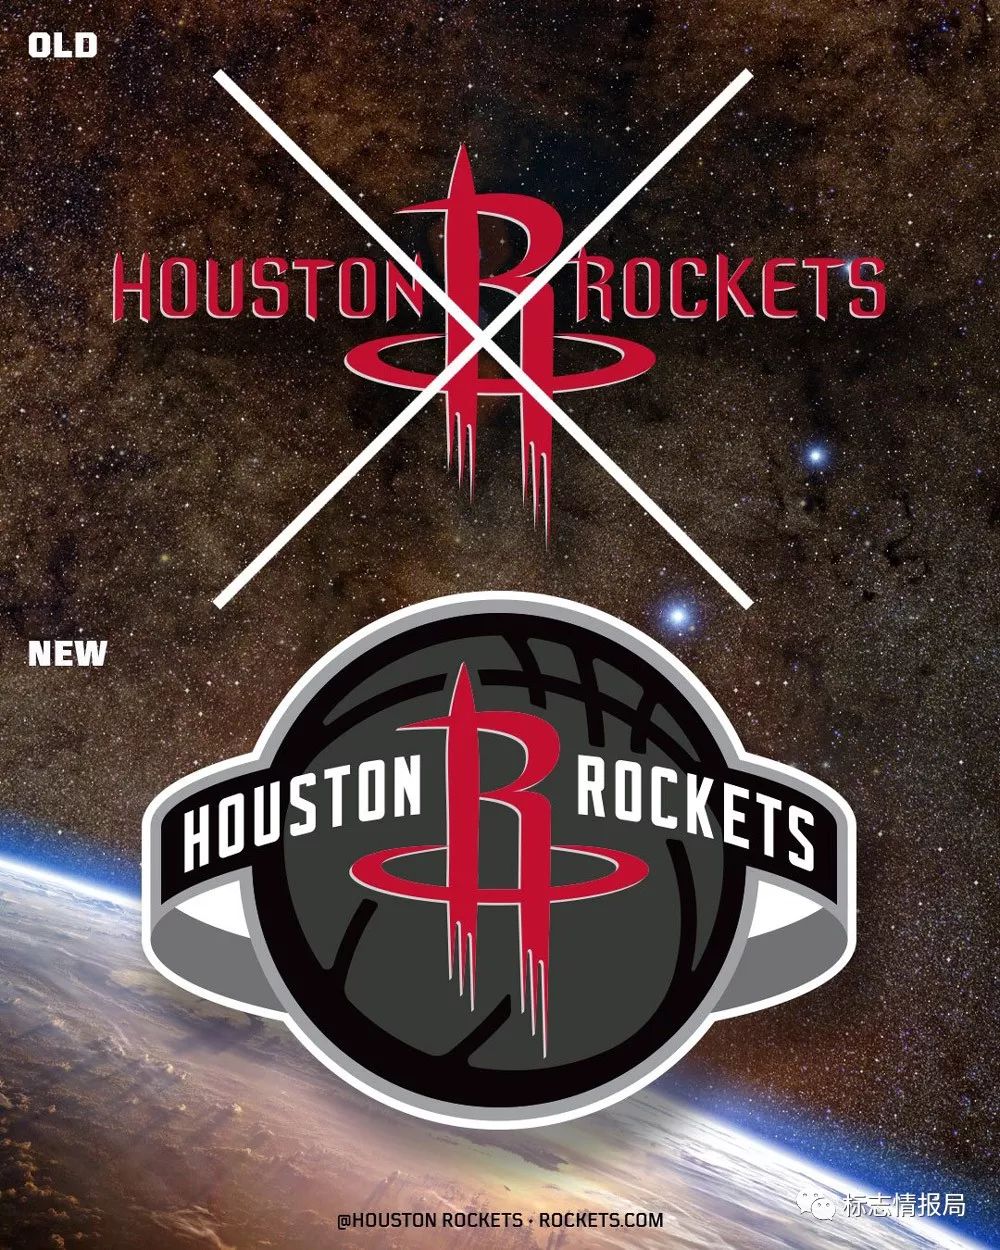 nba火箭队新logo设计, 新旧对比分析